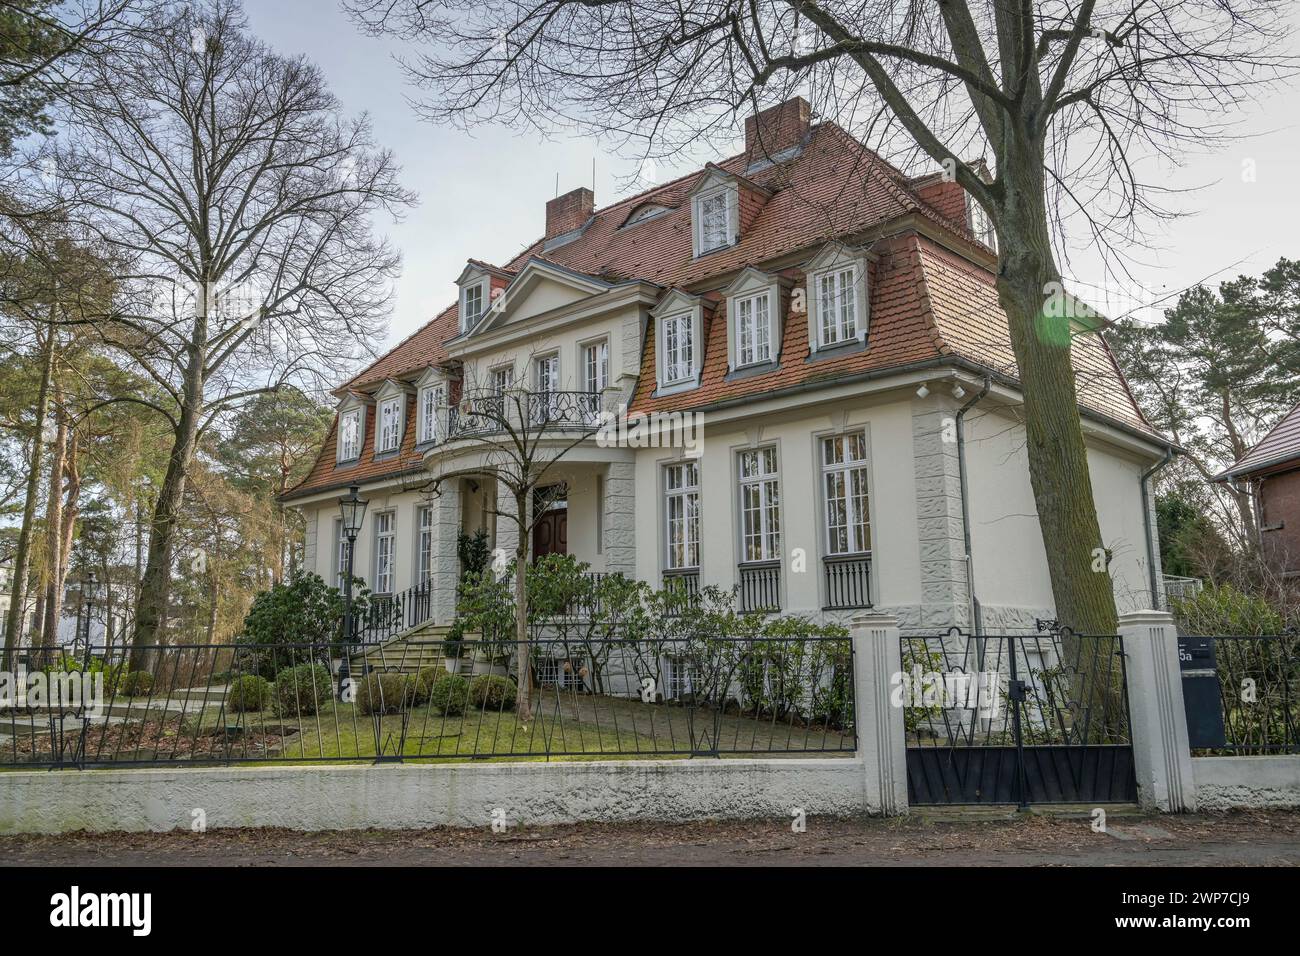 Villa, Residenz Botschafter Luxemburg, Wildpfad 5, Grunewald, Charlottenburg-Wilmersdorf, Berlin, Deutschland Stock Photo